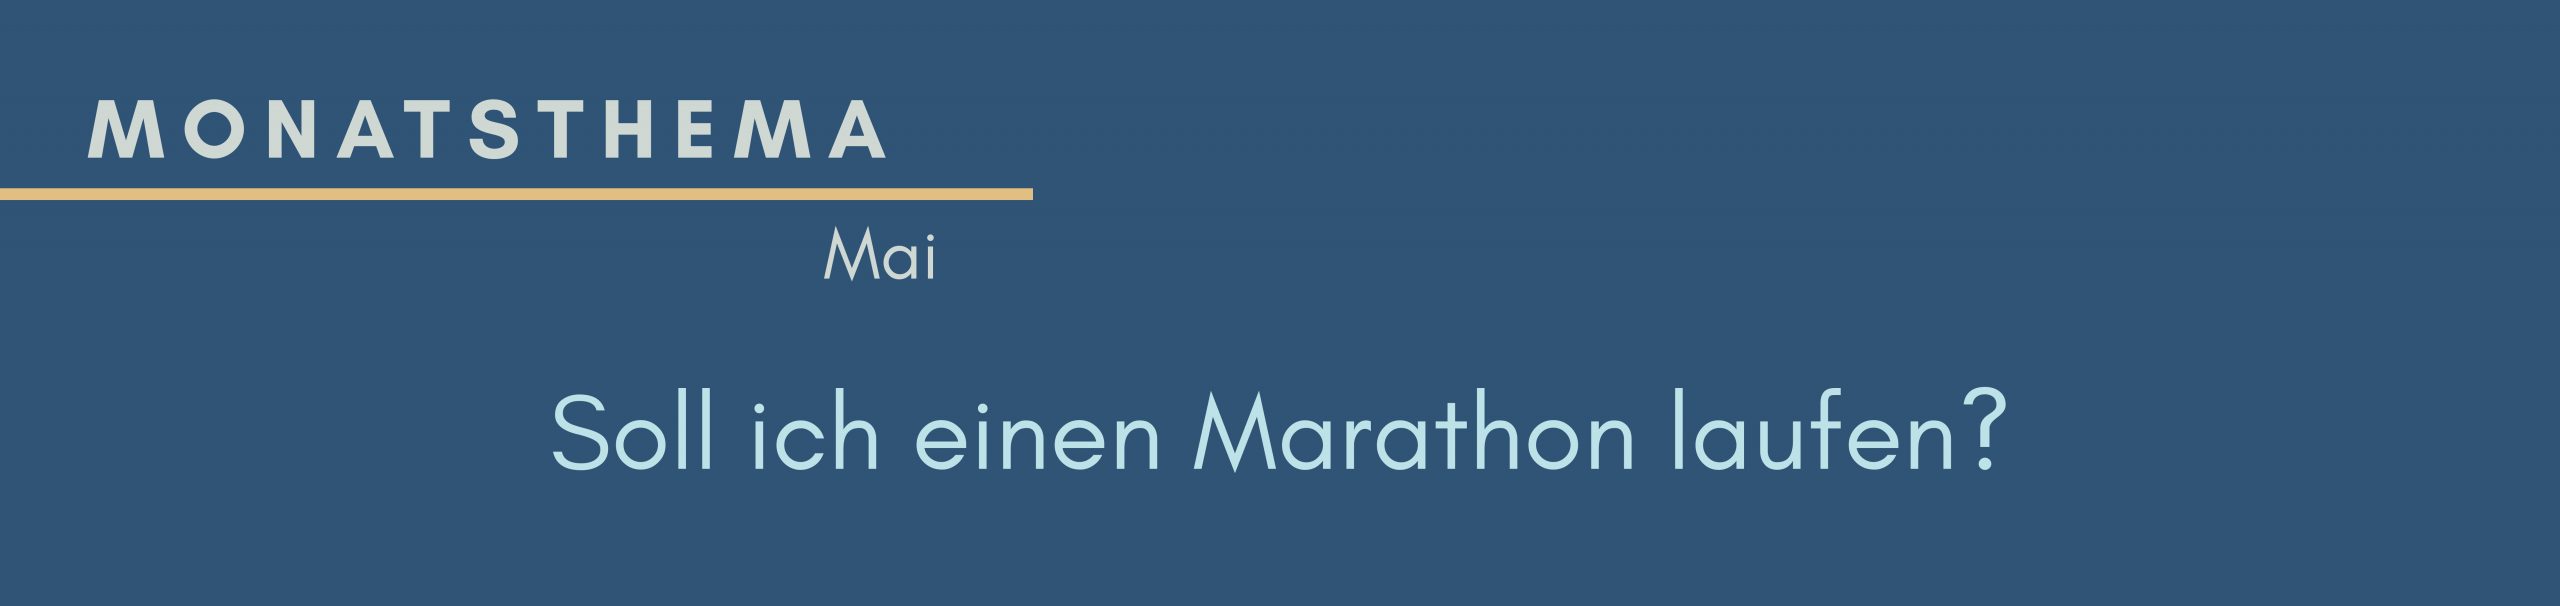 blauer Hintergrund mit Text: Monatsthema Mai, Soll ich einen Marathon laufen?